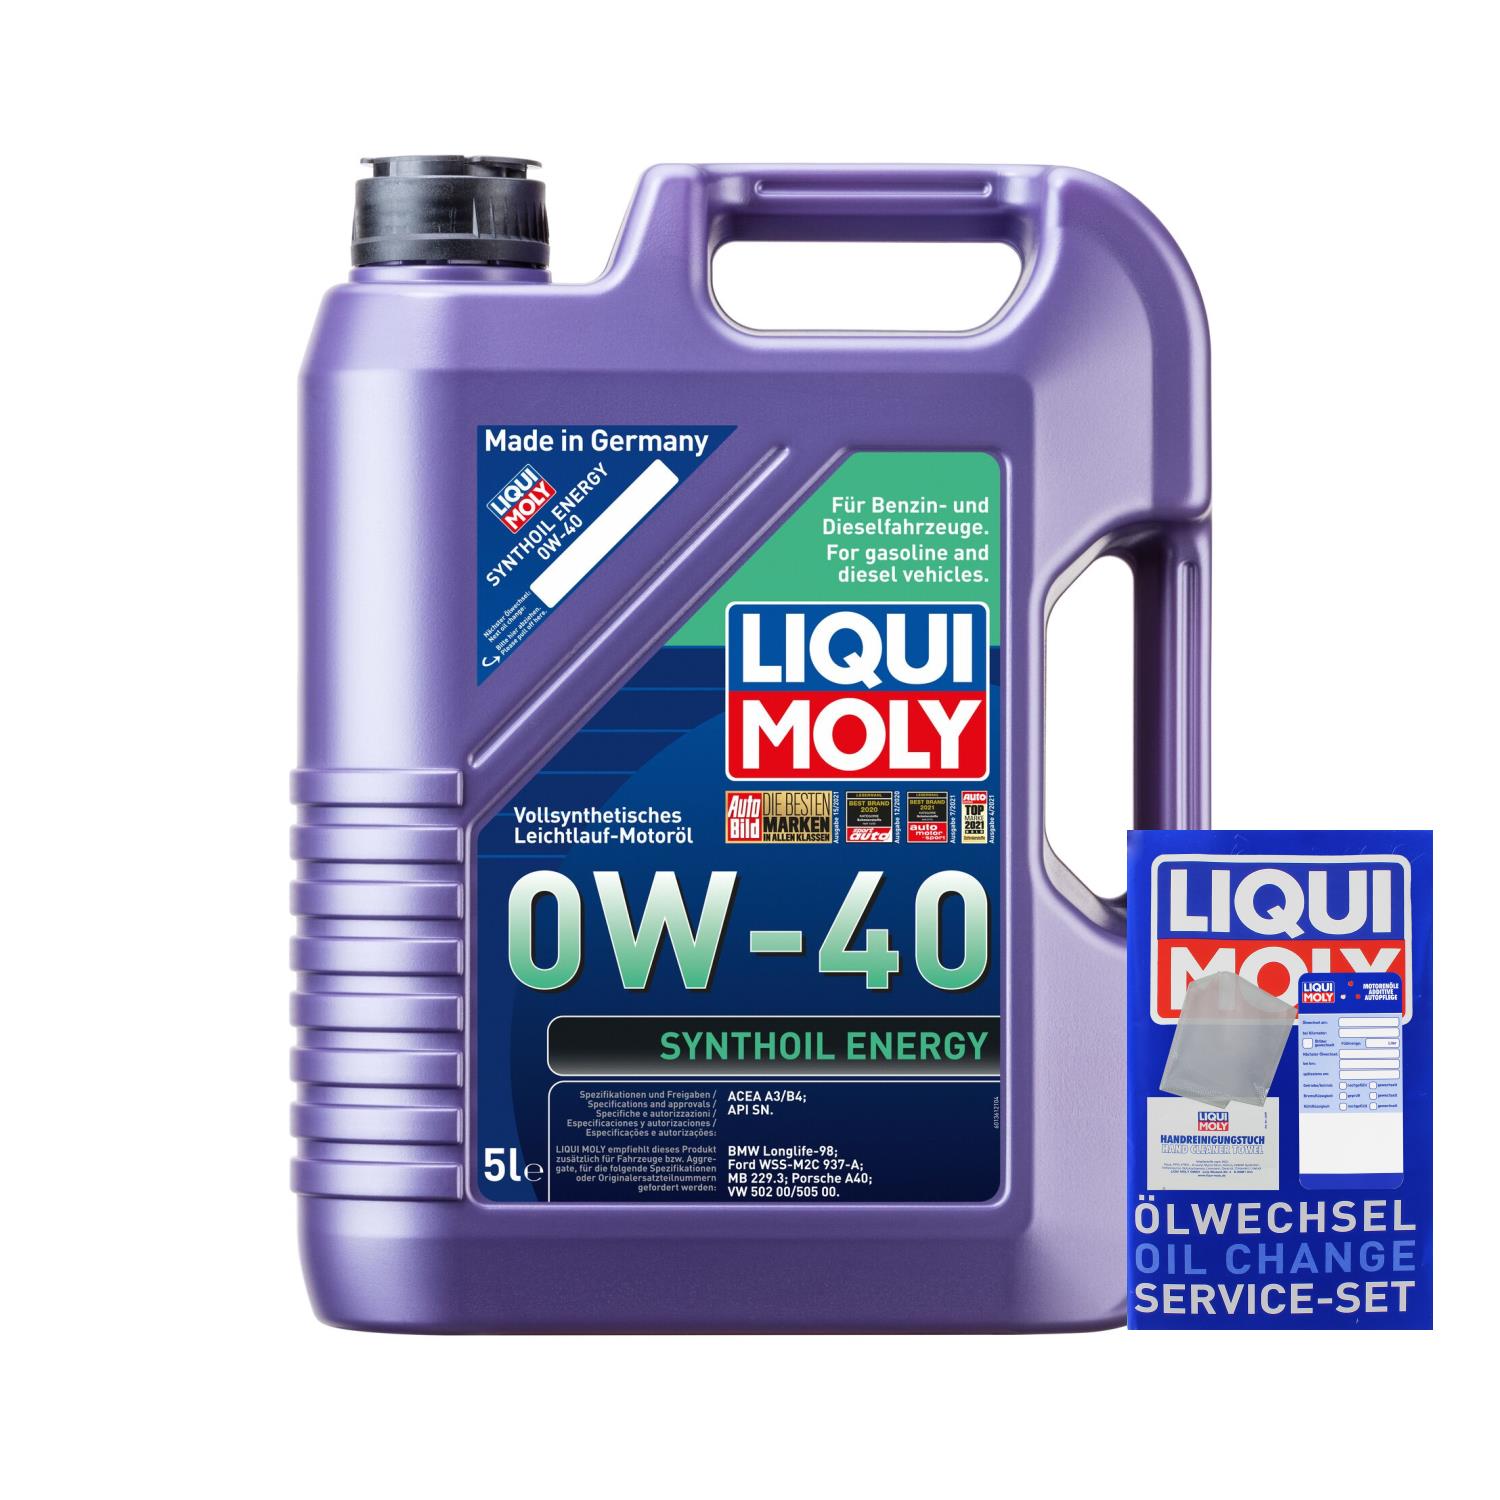  Liqui Moly 1361 1x5 Liter Synthoil Energy 0W-40 Motoröl